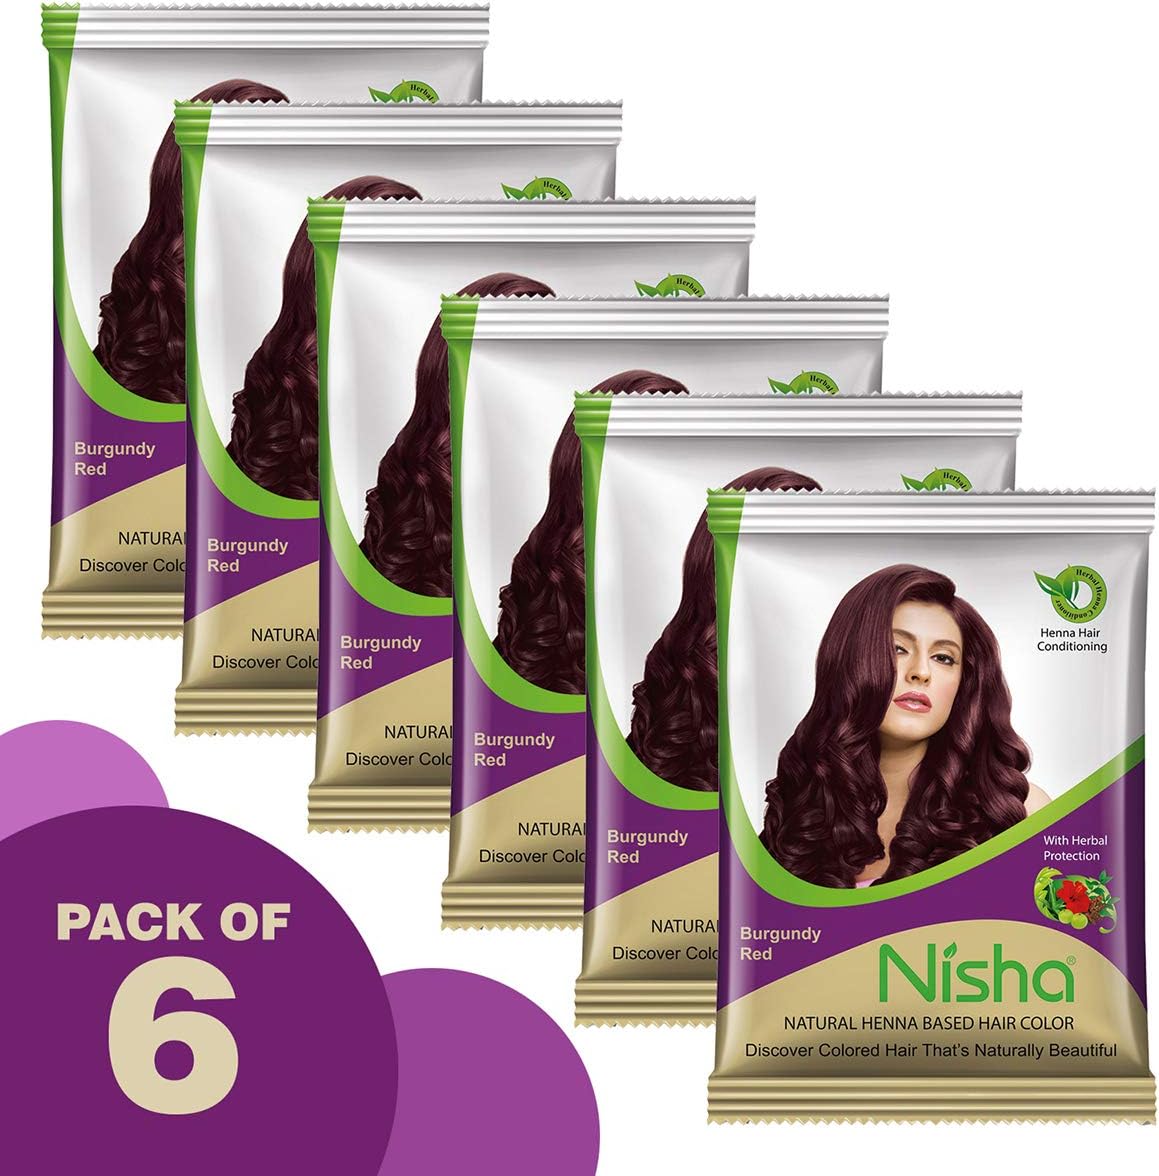 Nisha Natural Henna Based Hair Color Natural Black 25 g  JioMart